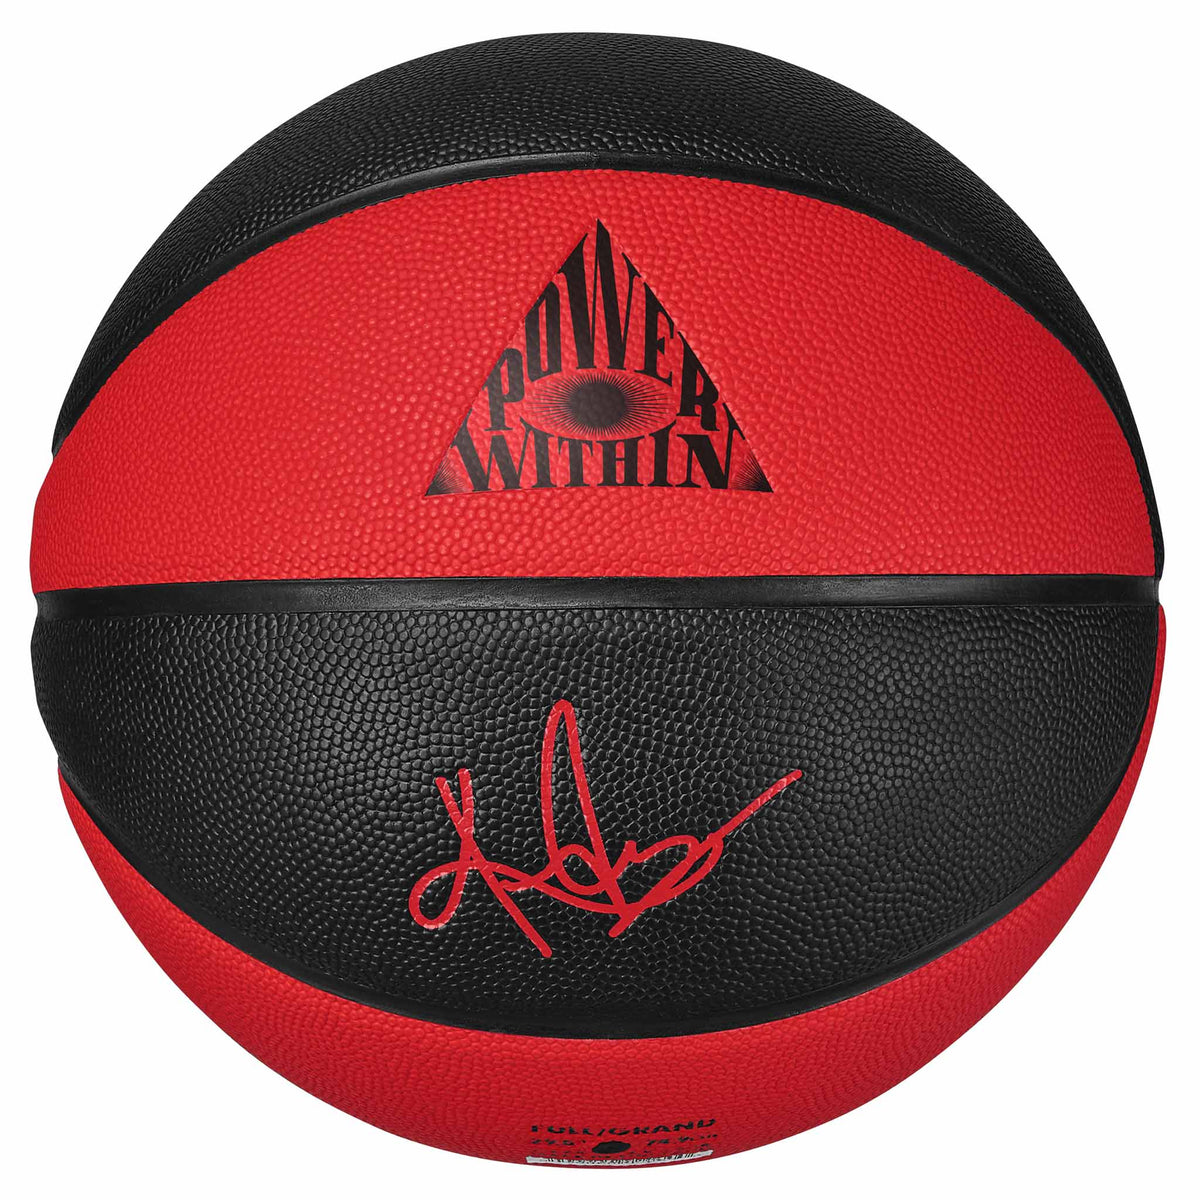 Ballon de basketball Nike Crossover Kyrie Irving 8P Graphic Eye 2